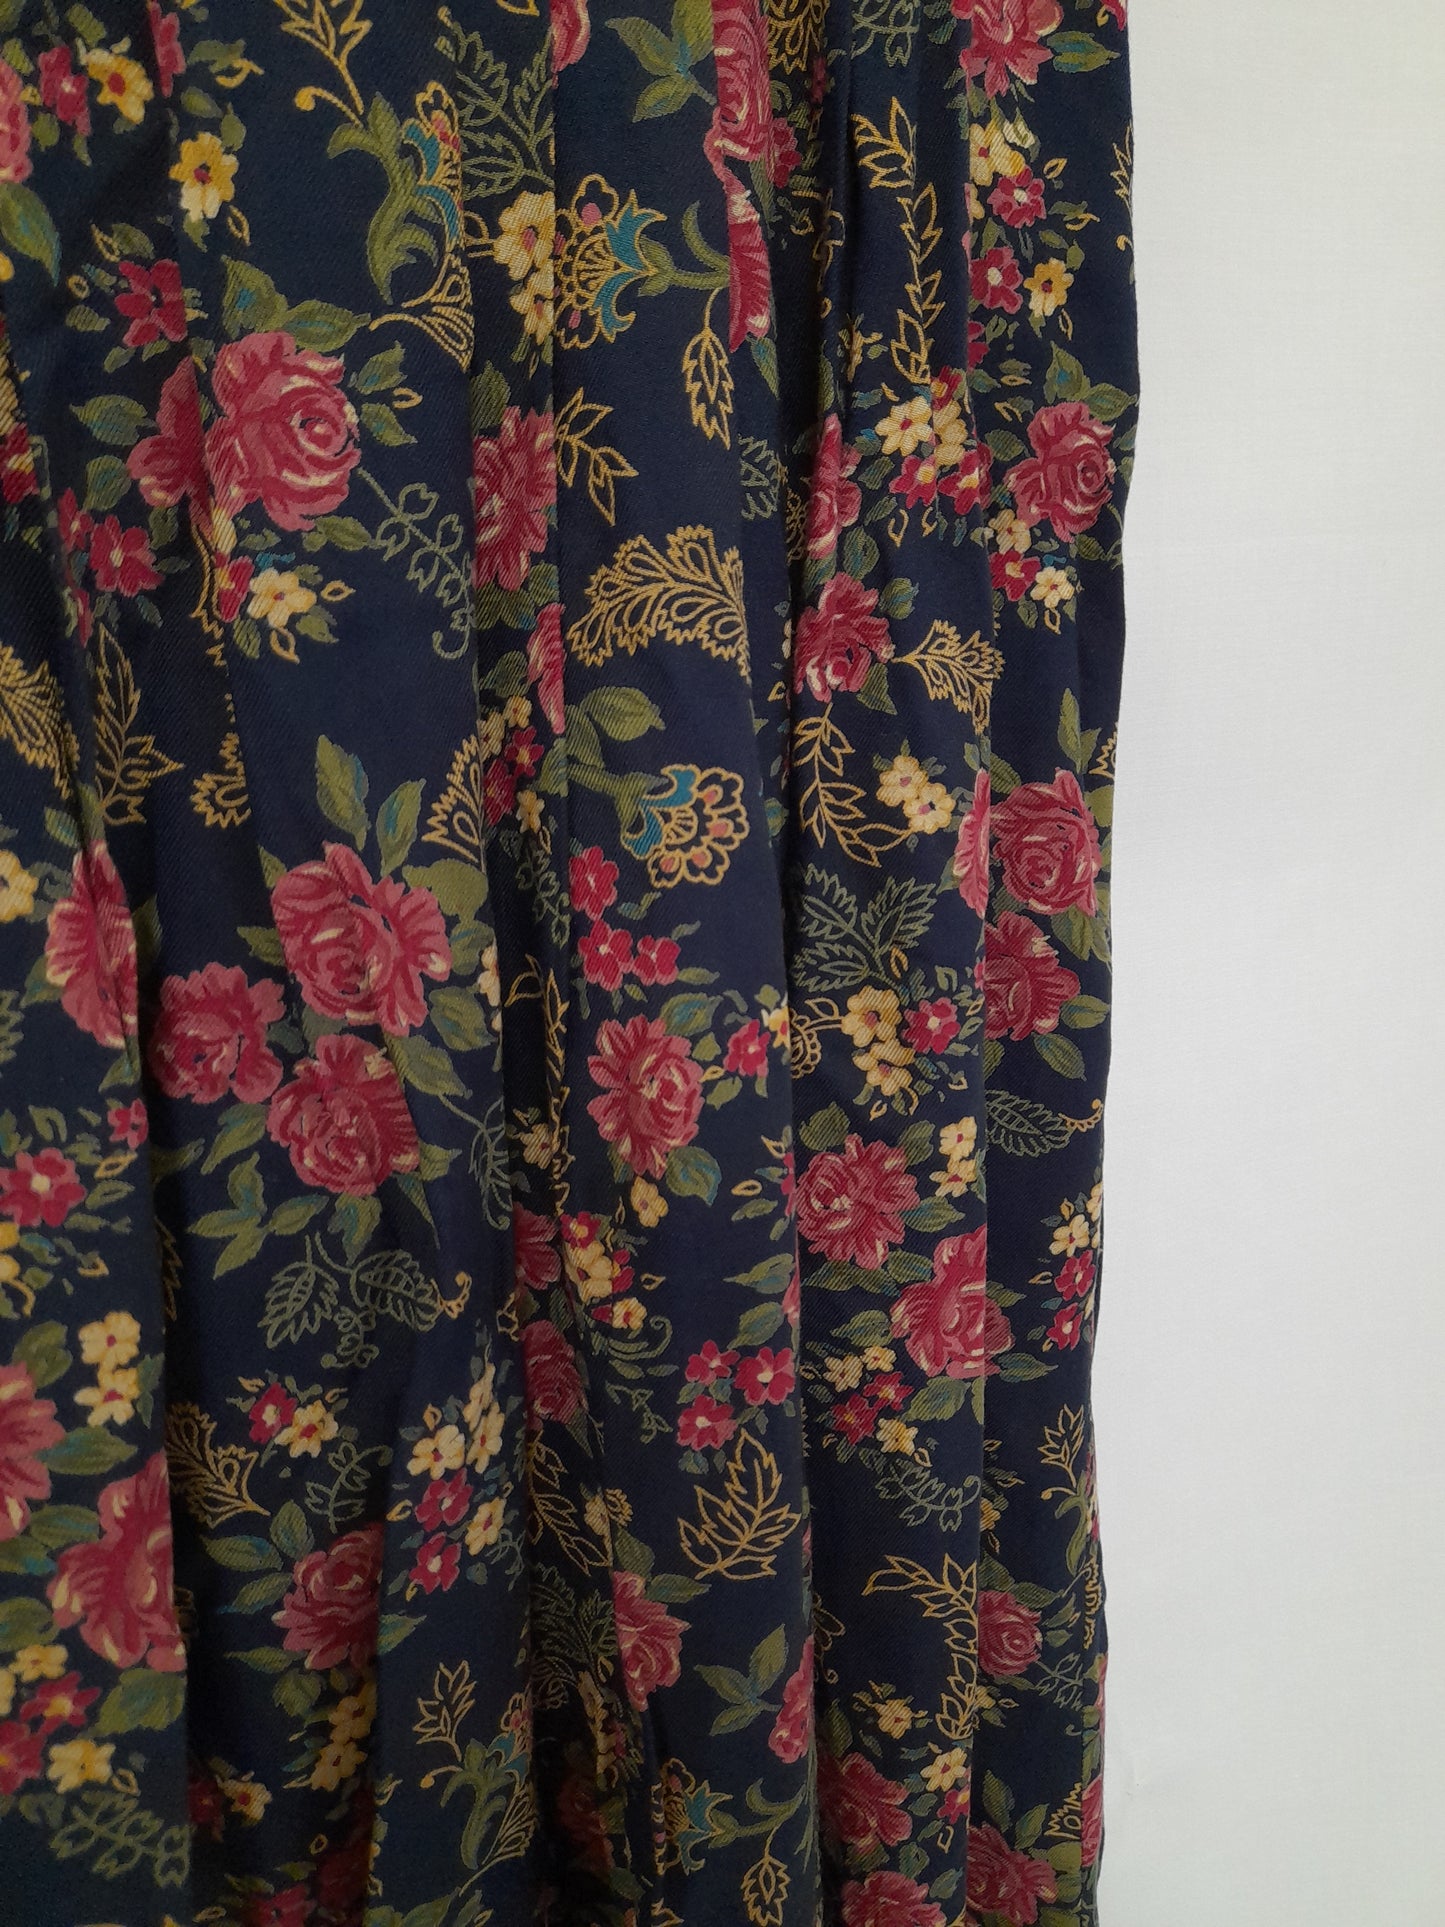 Vintage Floral Navy Skirt Size 16